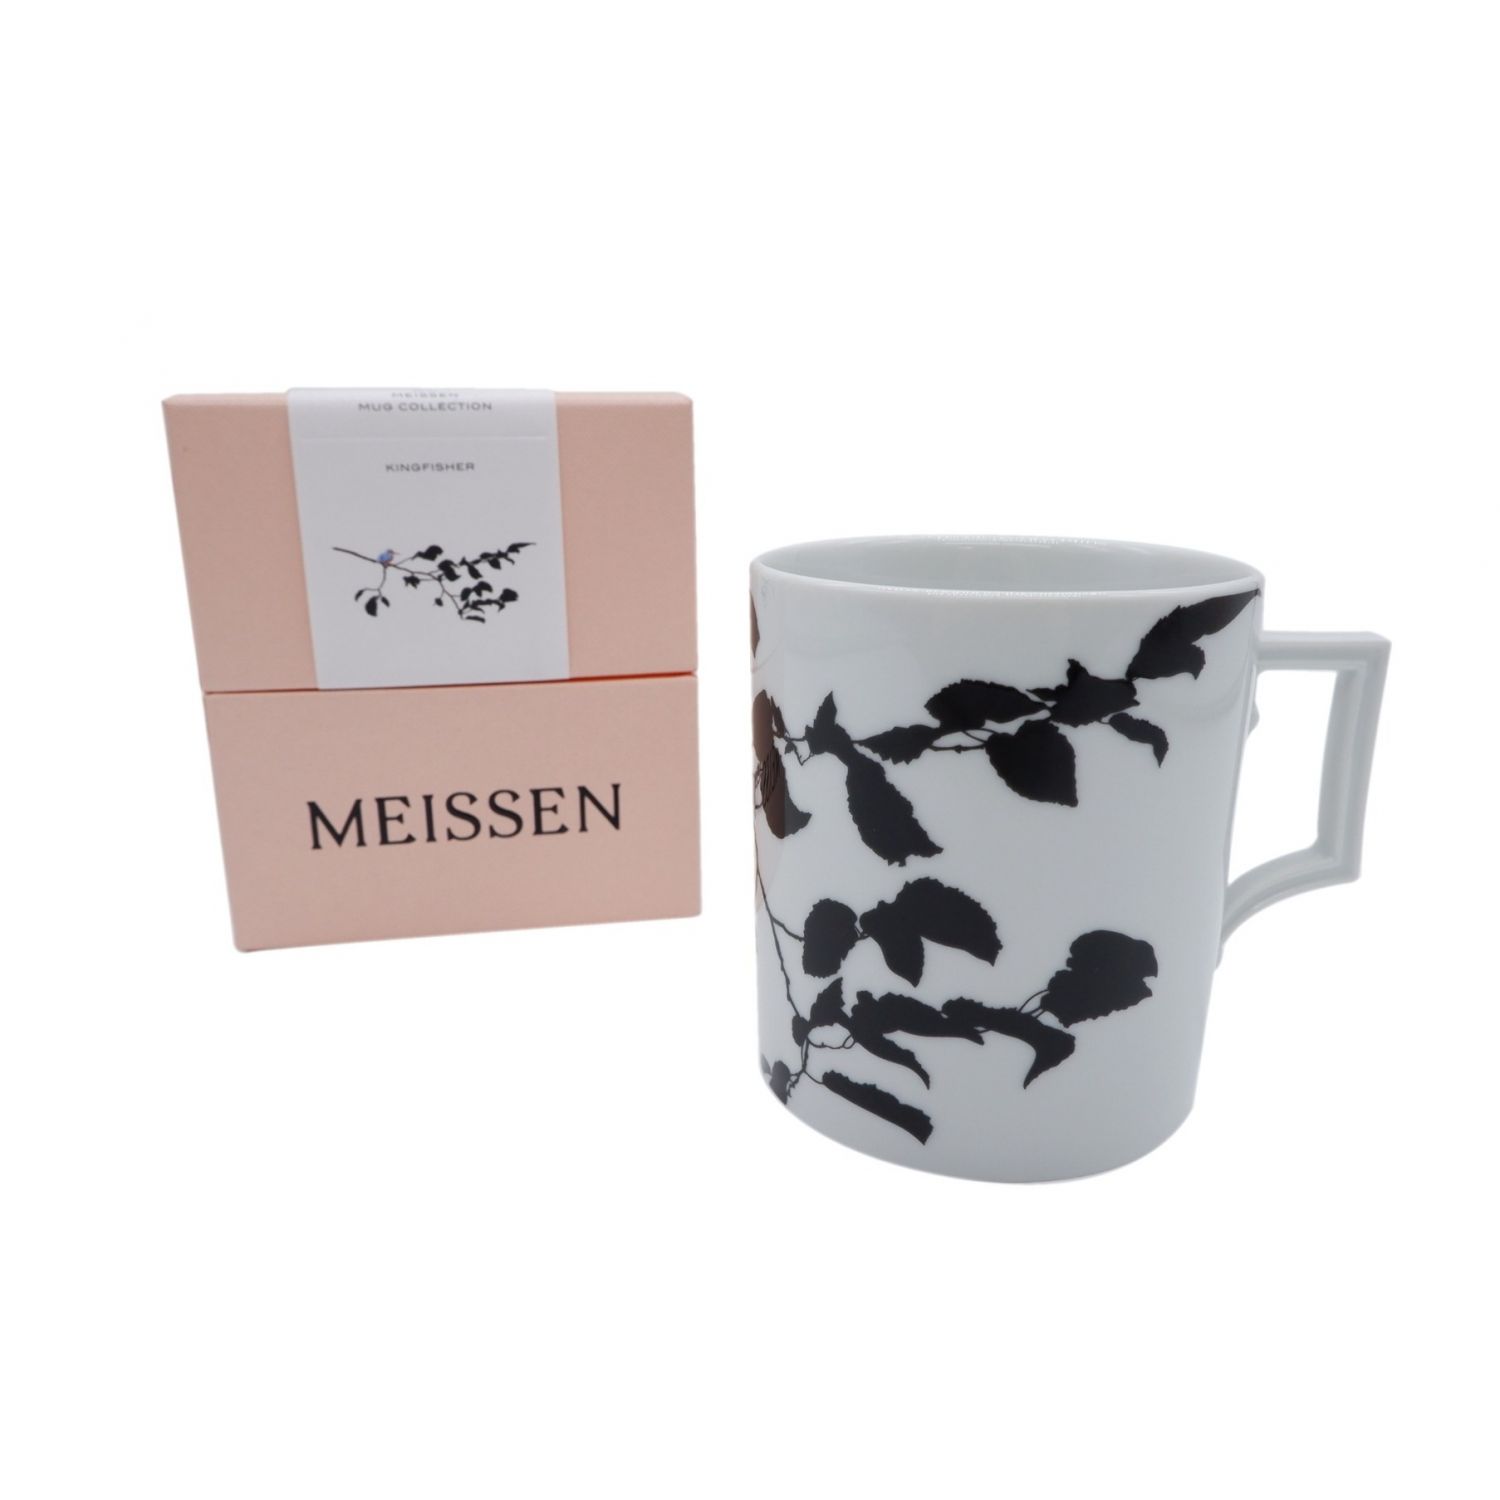 Meissen マイセン マグカップ MUG COLLECTION - 食器